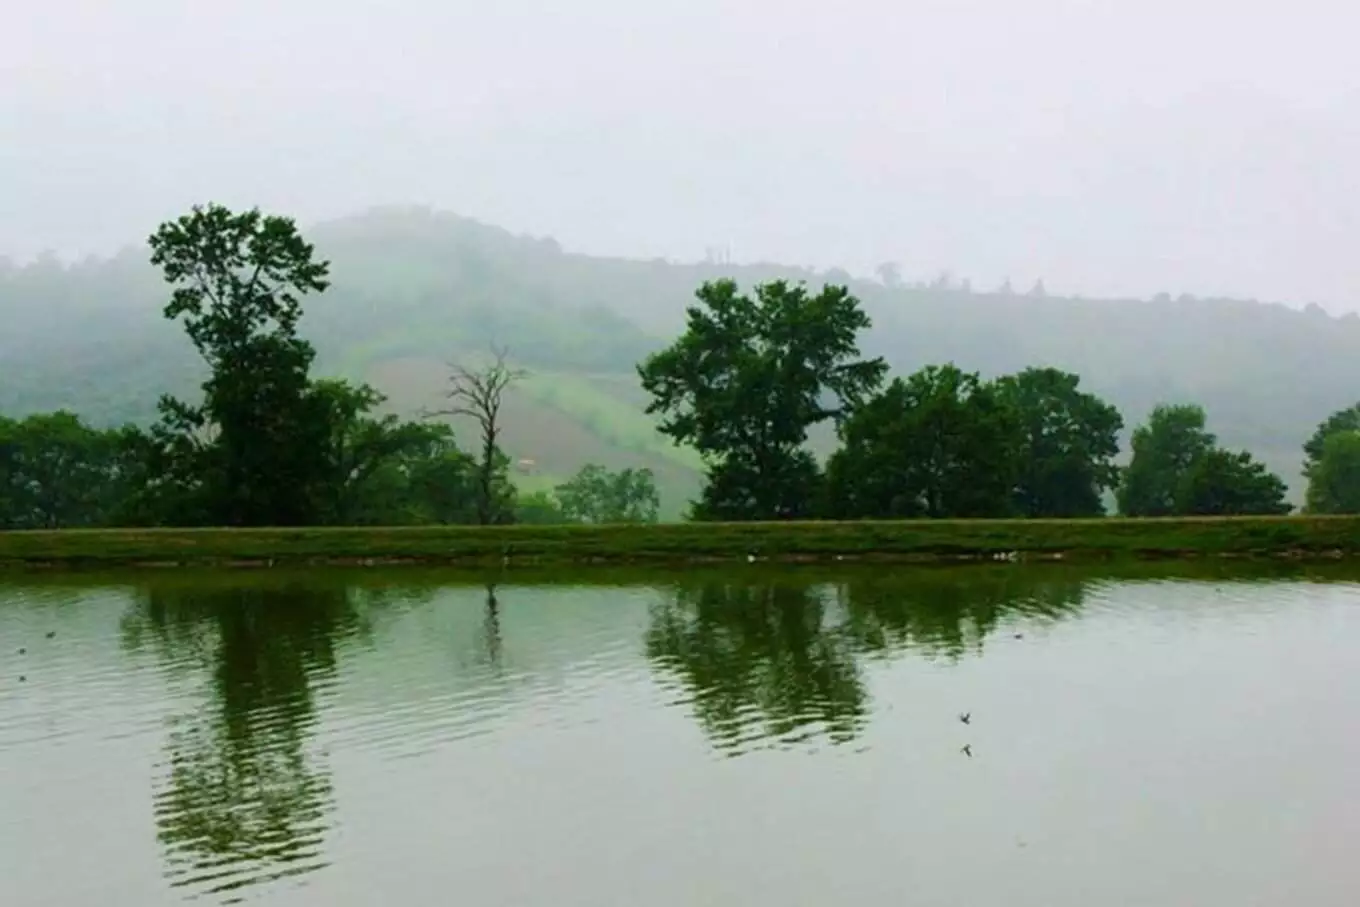 عکس دریاچه توشن